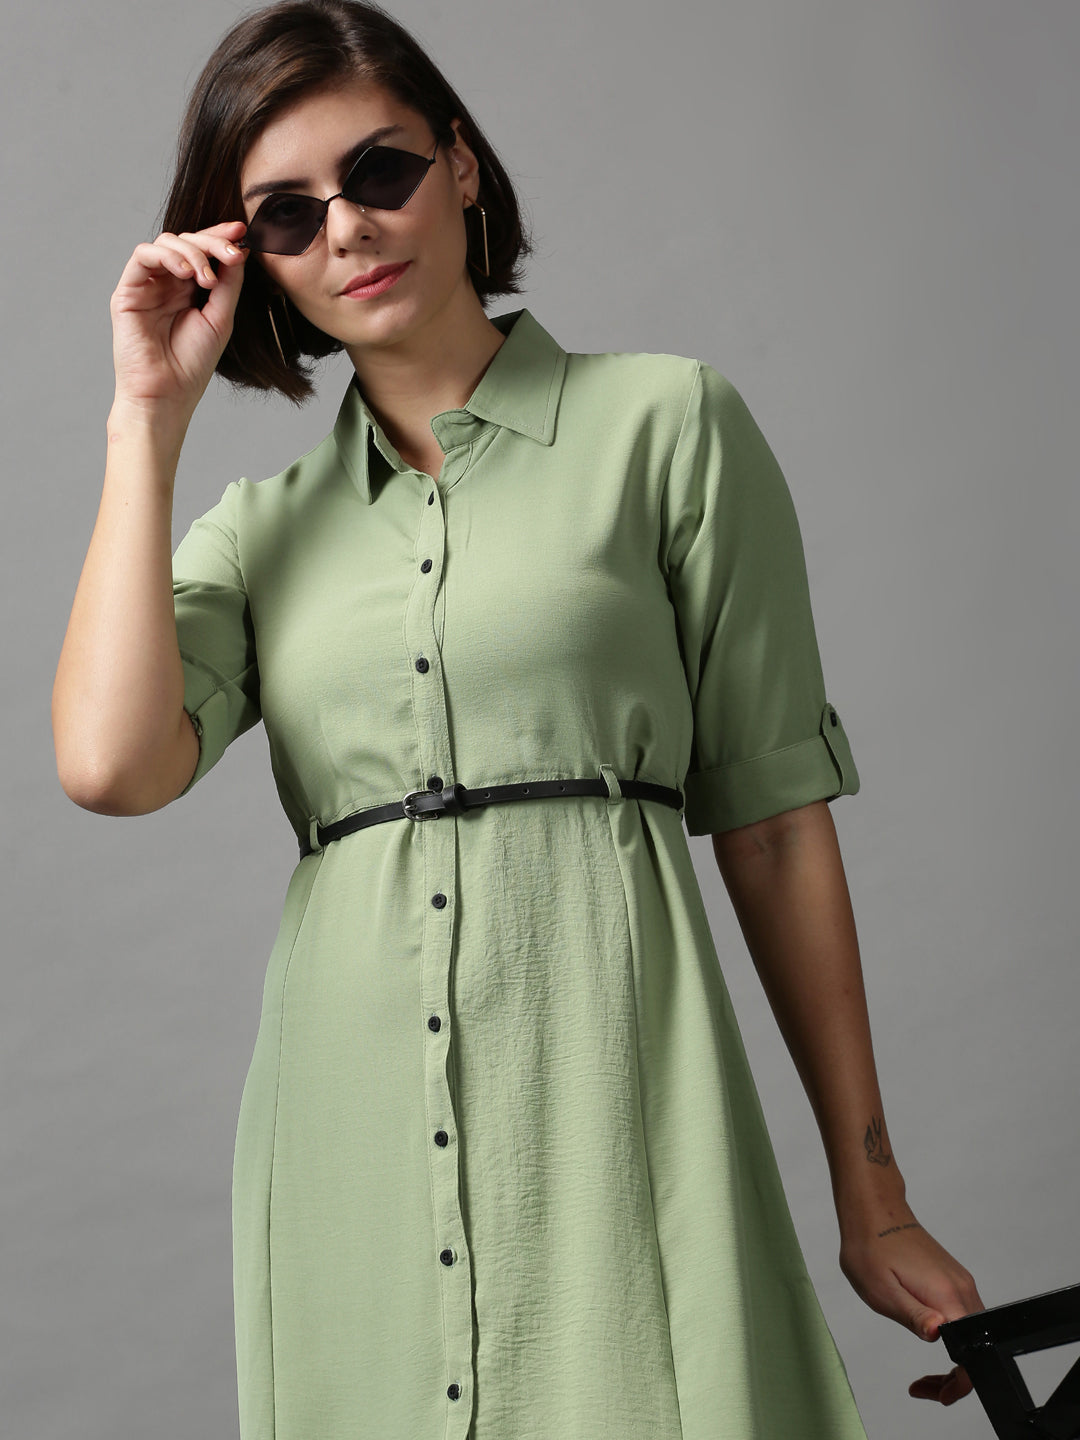 Women's Green Solid A-Line Dress